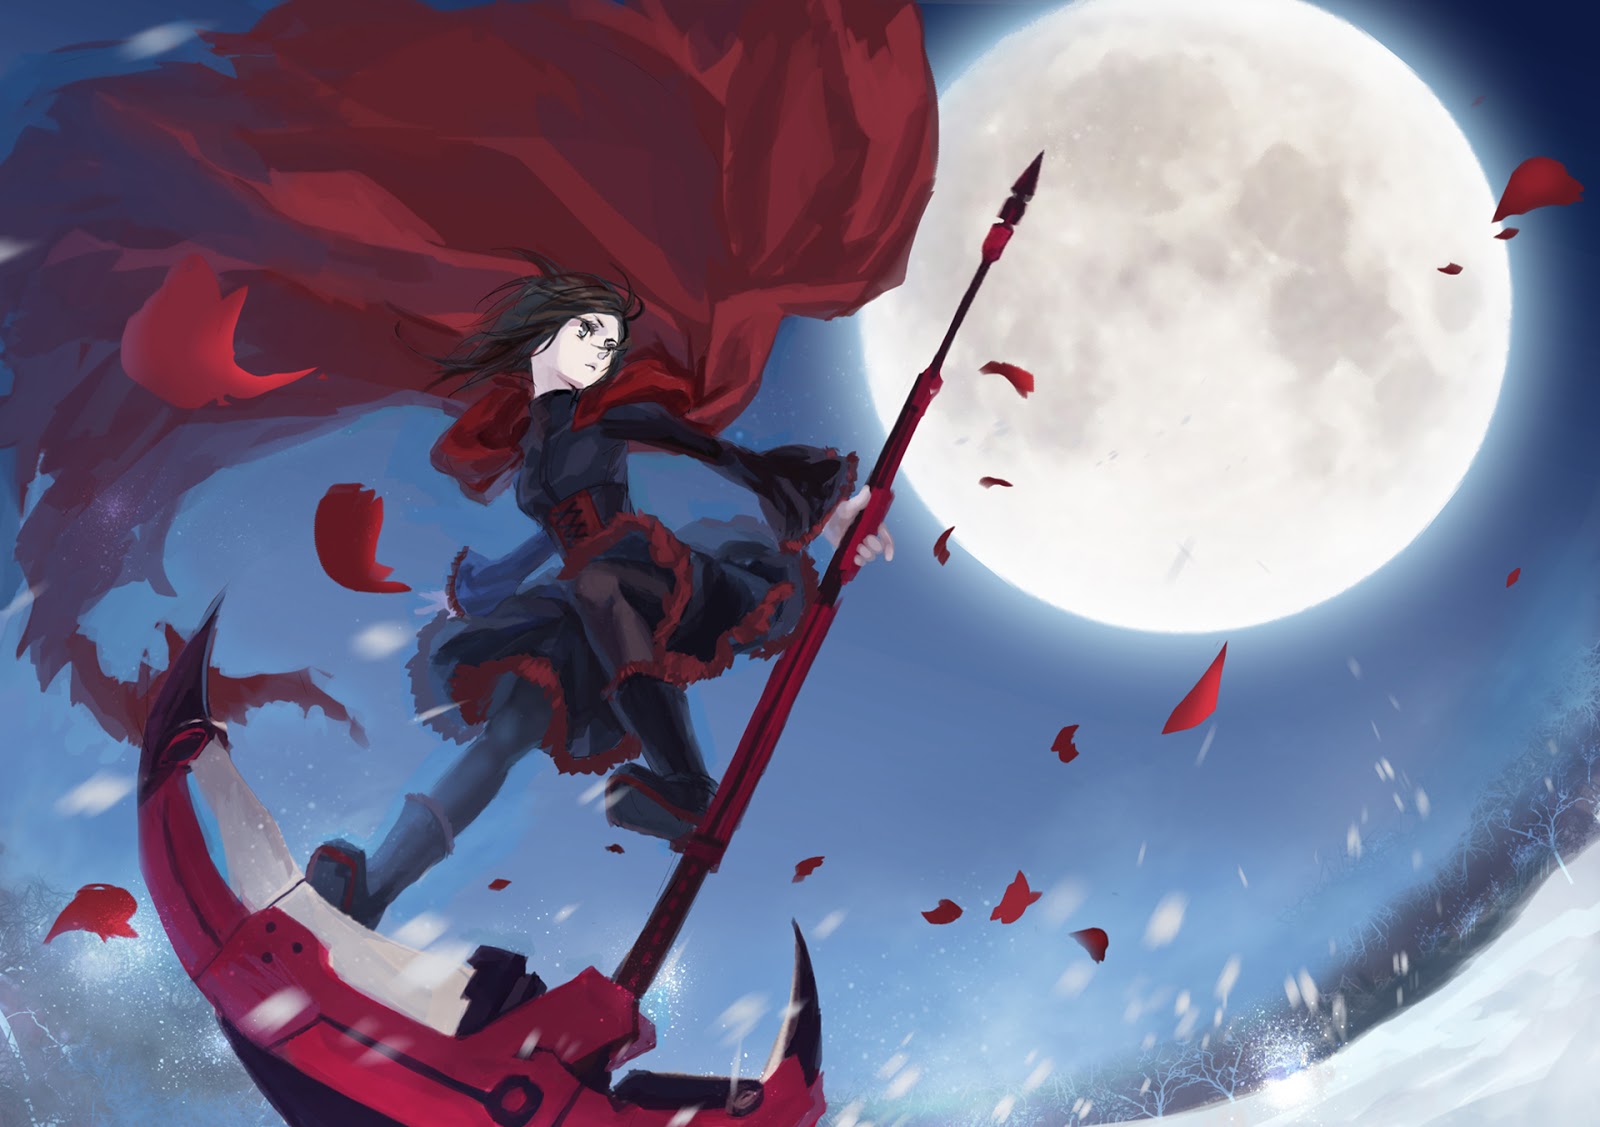 Red Rwby Anime Girl Death Scythe Full Moon Blac Dress Snow HD